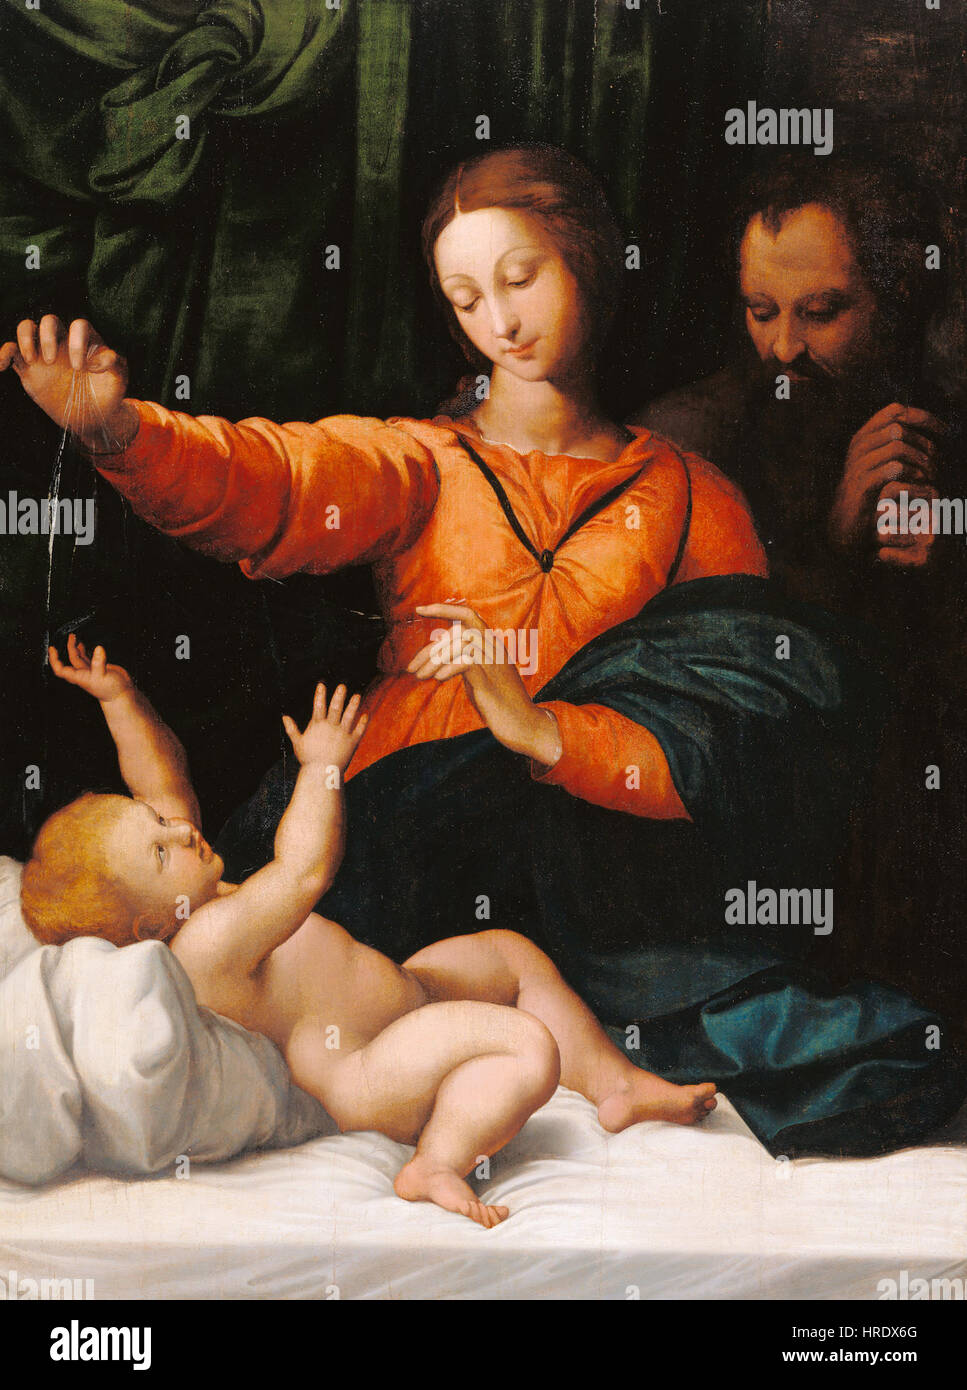 Copia dopo Raphael (Raffaello Sanzio) - La Santa famiglia (Madonna del velo, Madonna di Loreto) - 71.PB.16 - J. Paul Getty Museum Foto Stock